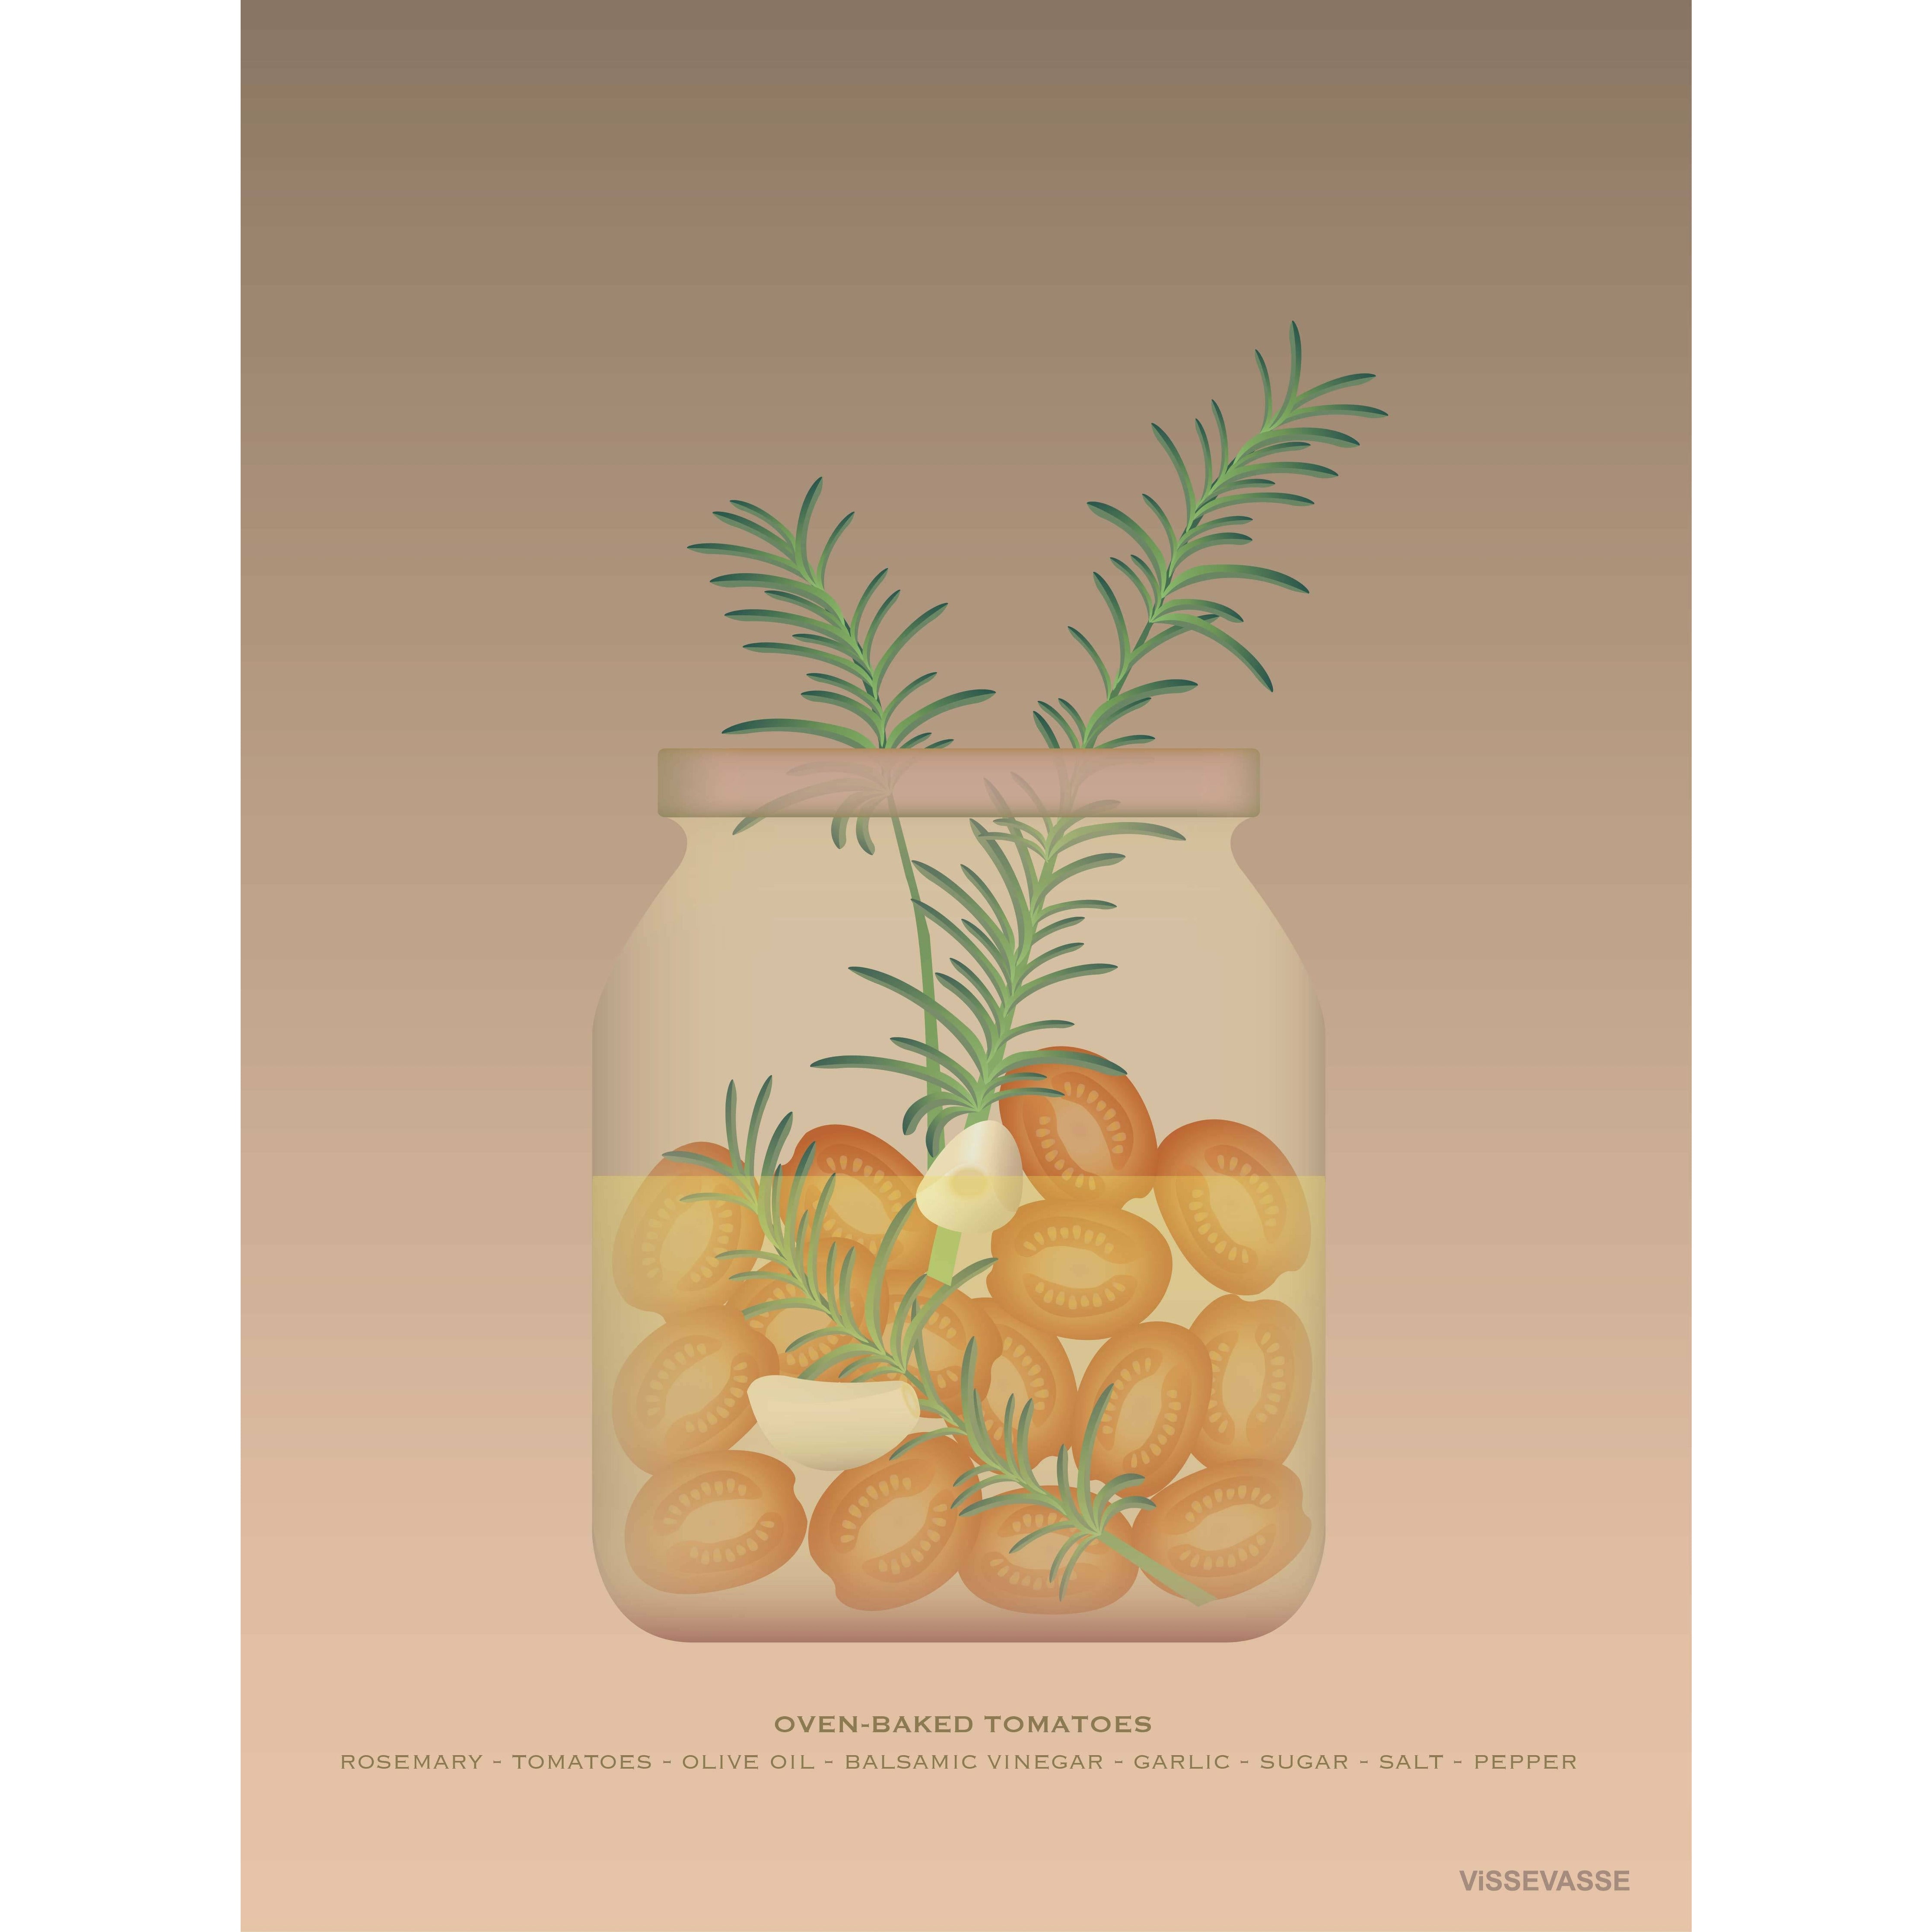 Vissevasse Ofengebackene Tomaten Poster, 30 X40 Cm